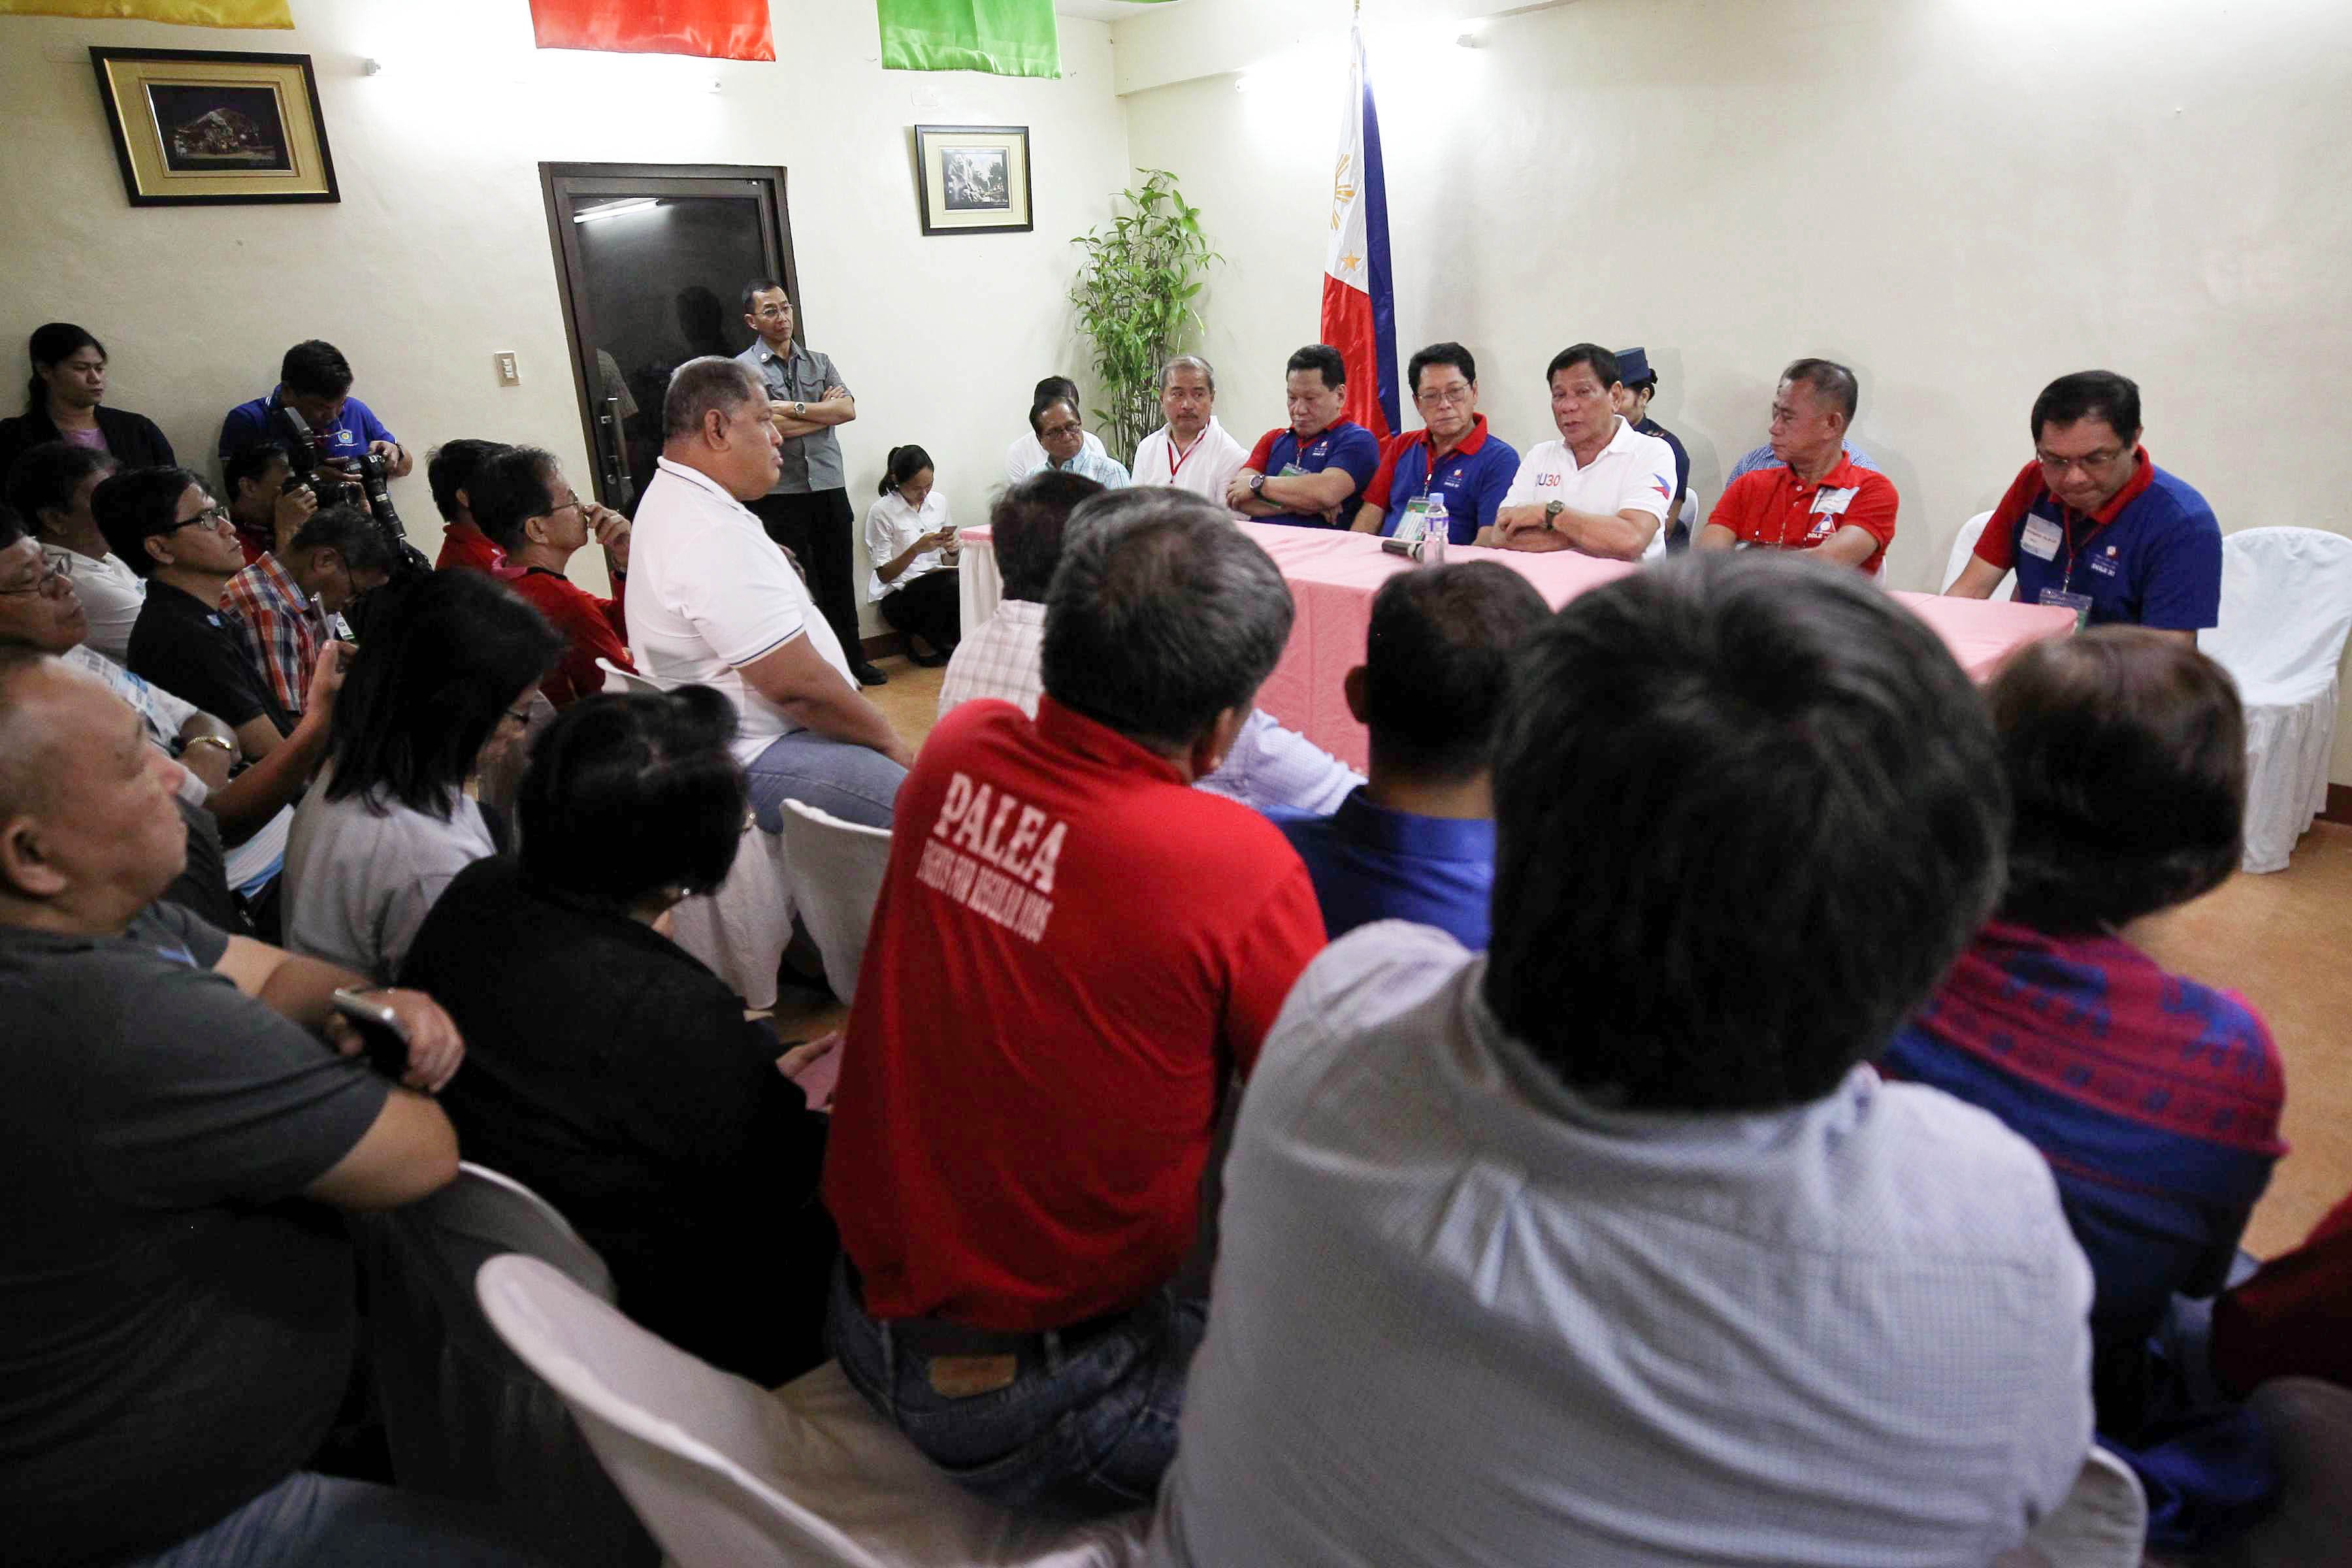 PRRD attends Labor Day event in Davao City